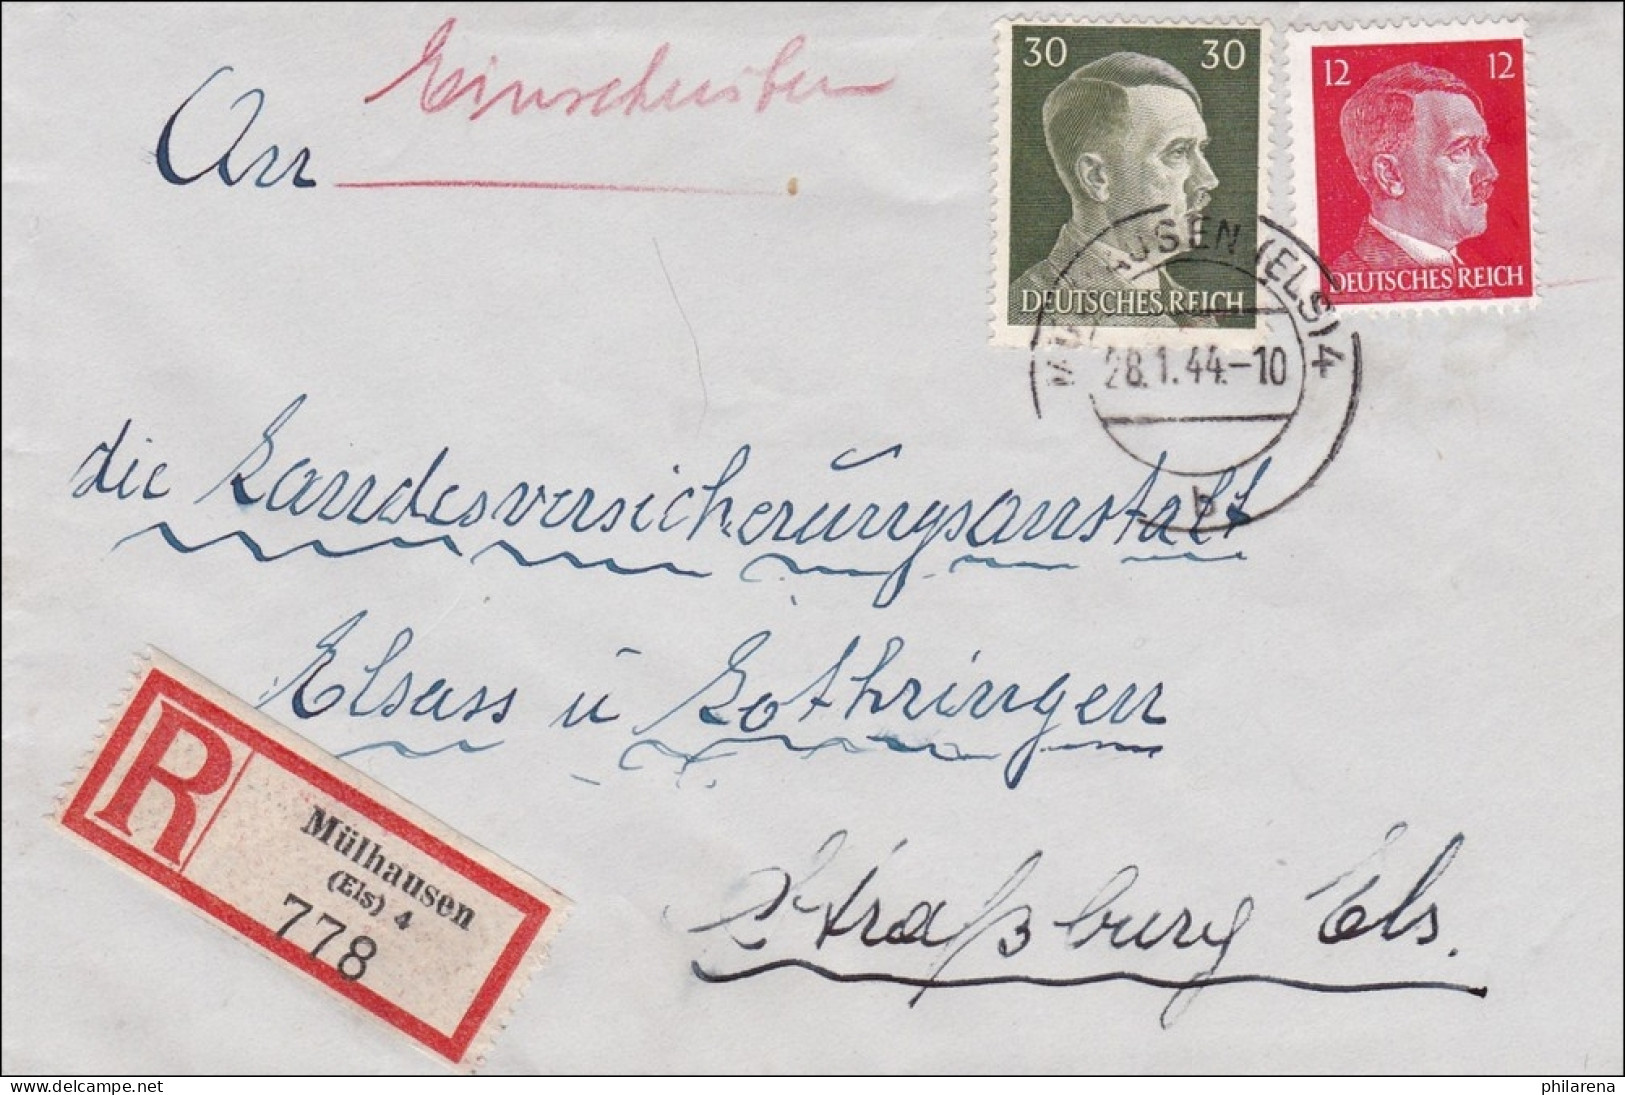 Elsass: Einschreiben Mühlhausen Nach Straßburg 1944 - Occupation 1938-45